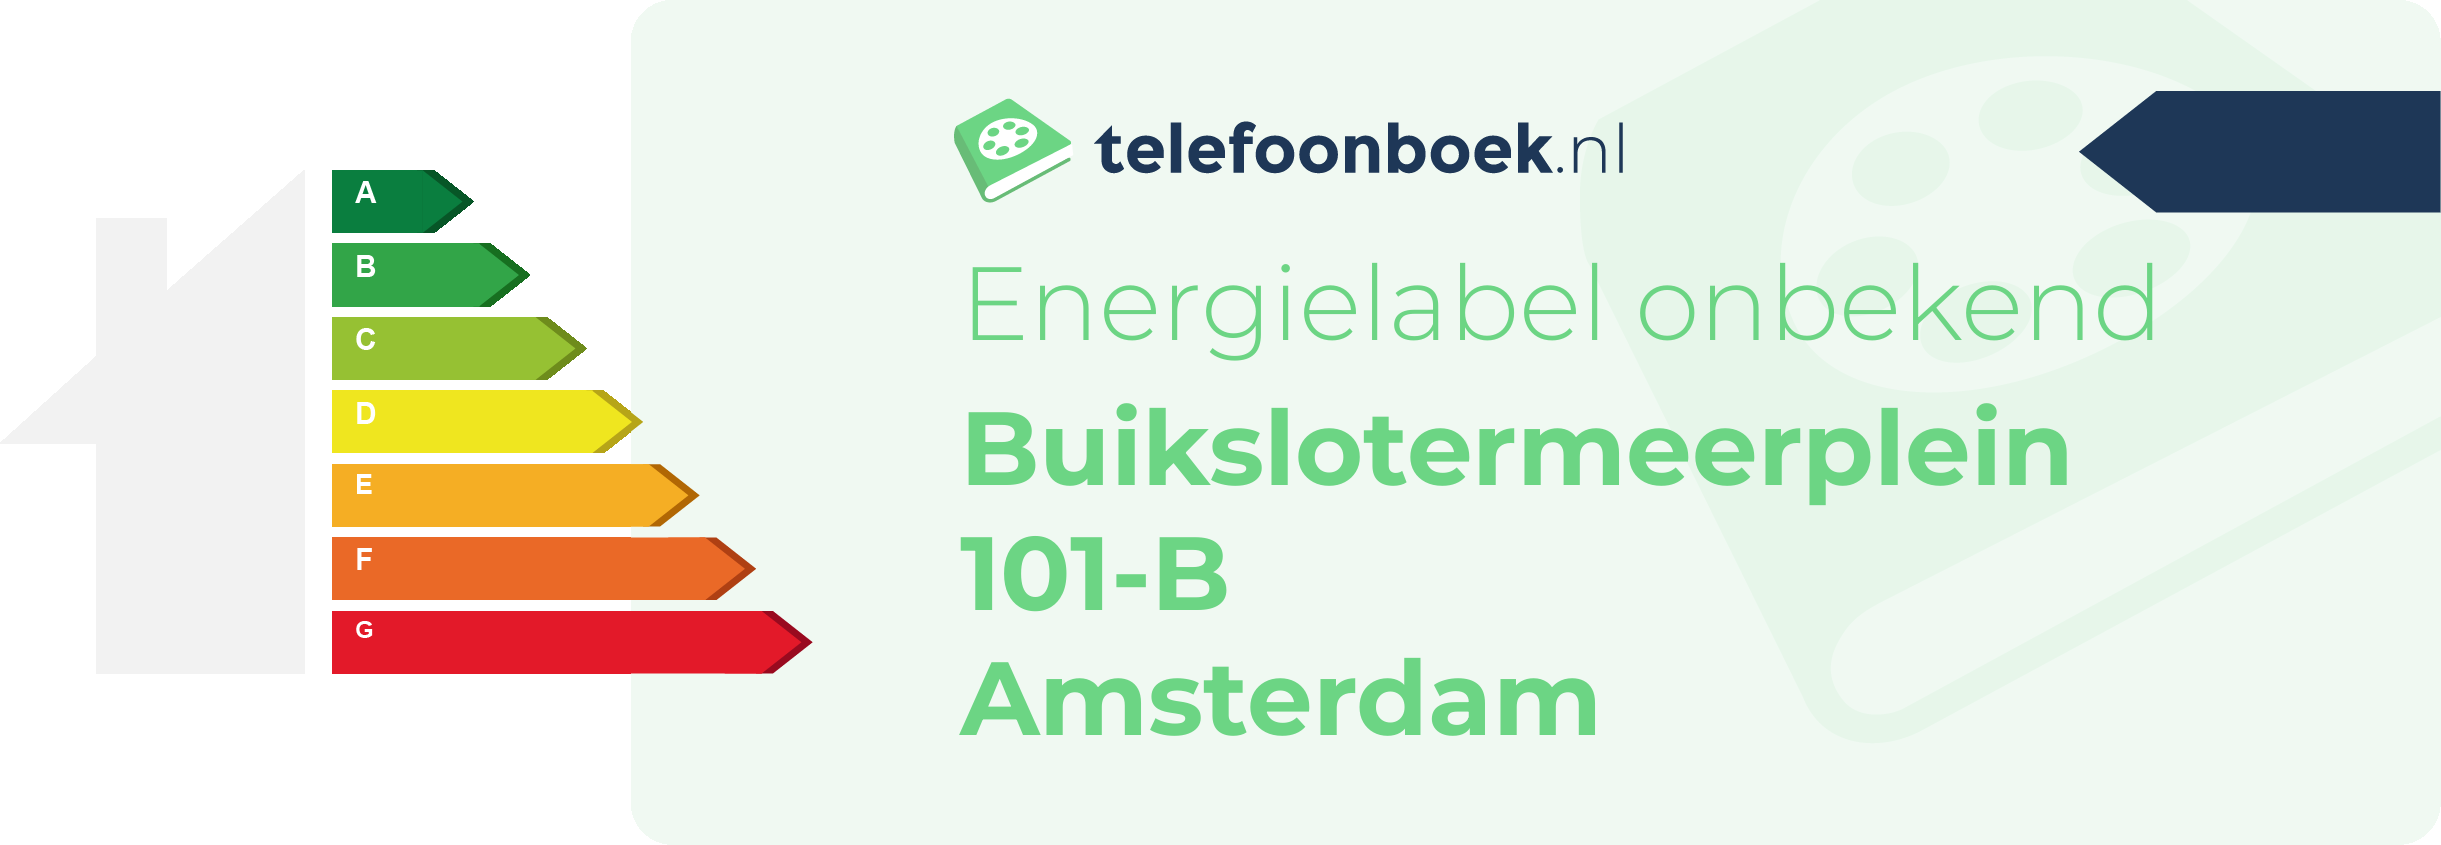 Energielabel Buikslotermeerplein 101-B Amsterdam